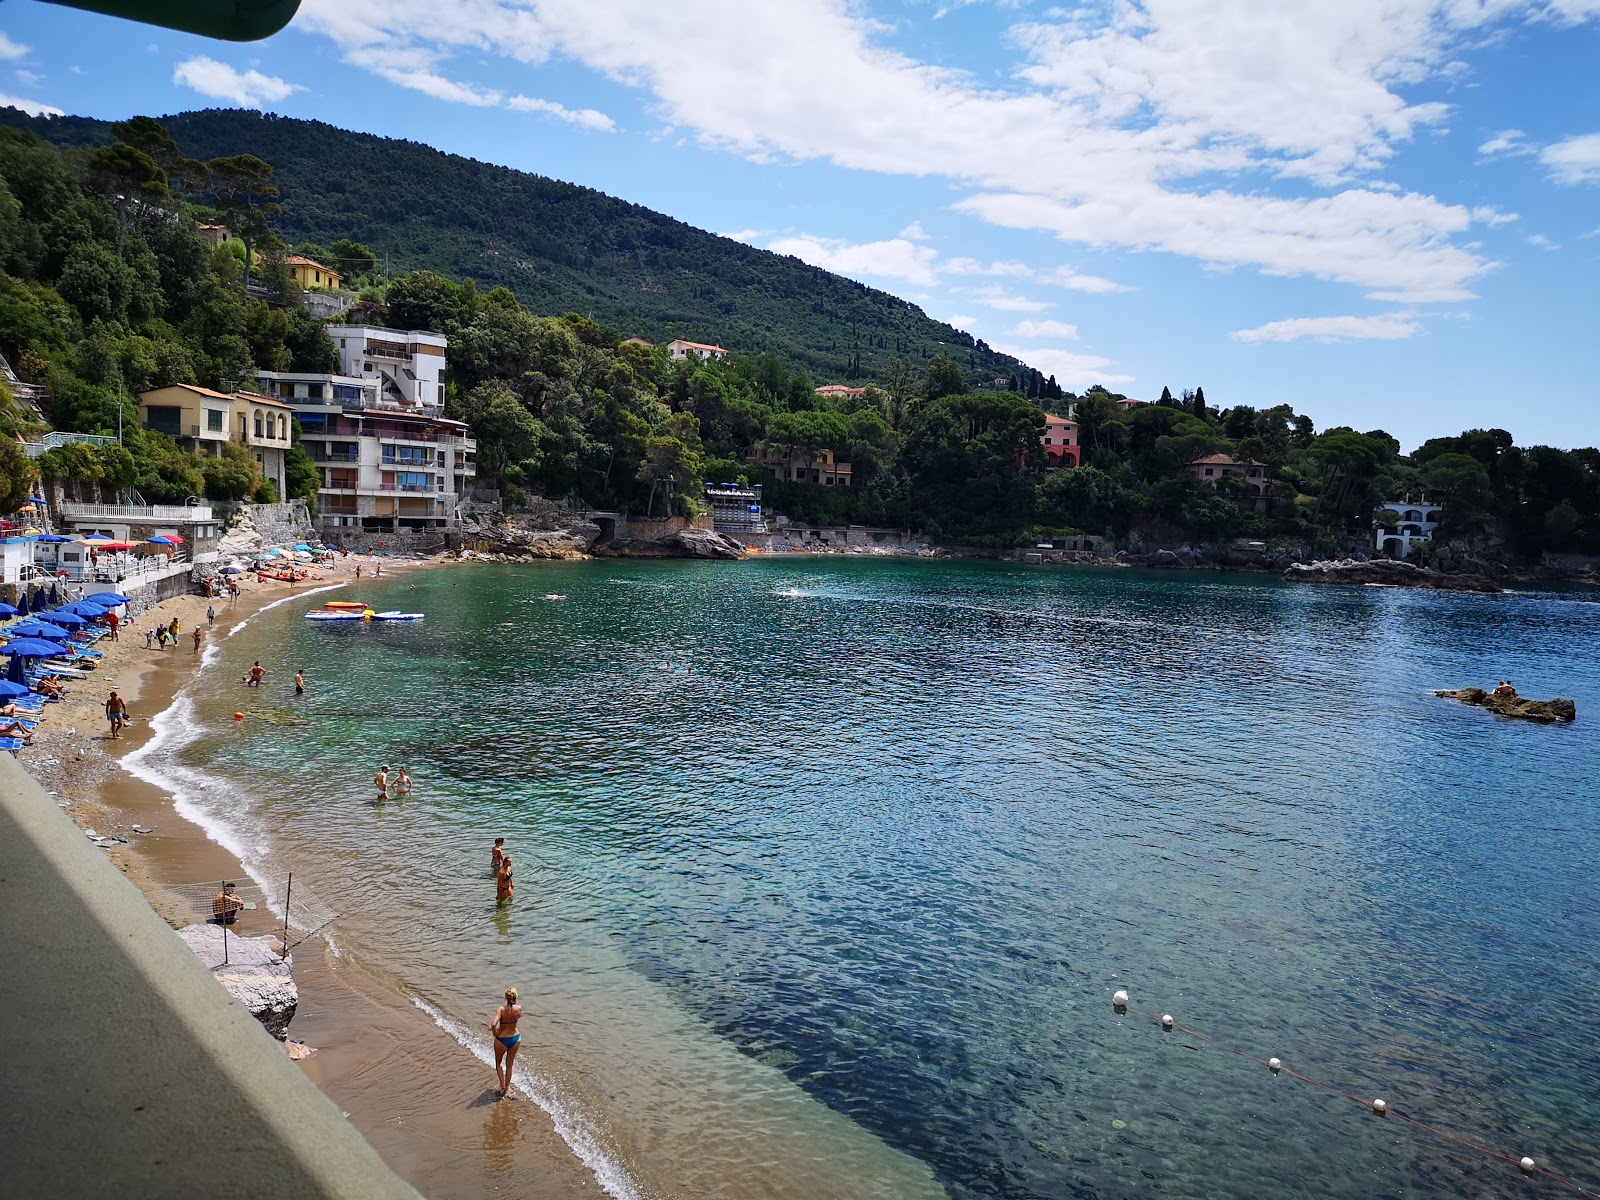 Foto von Spiaggia Fiascherino mit blaues wasser Oberfläche